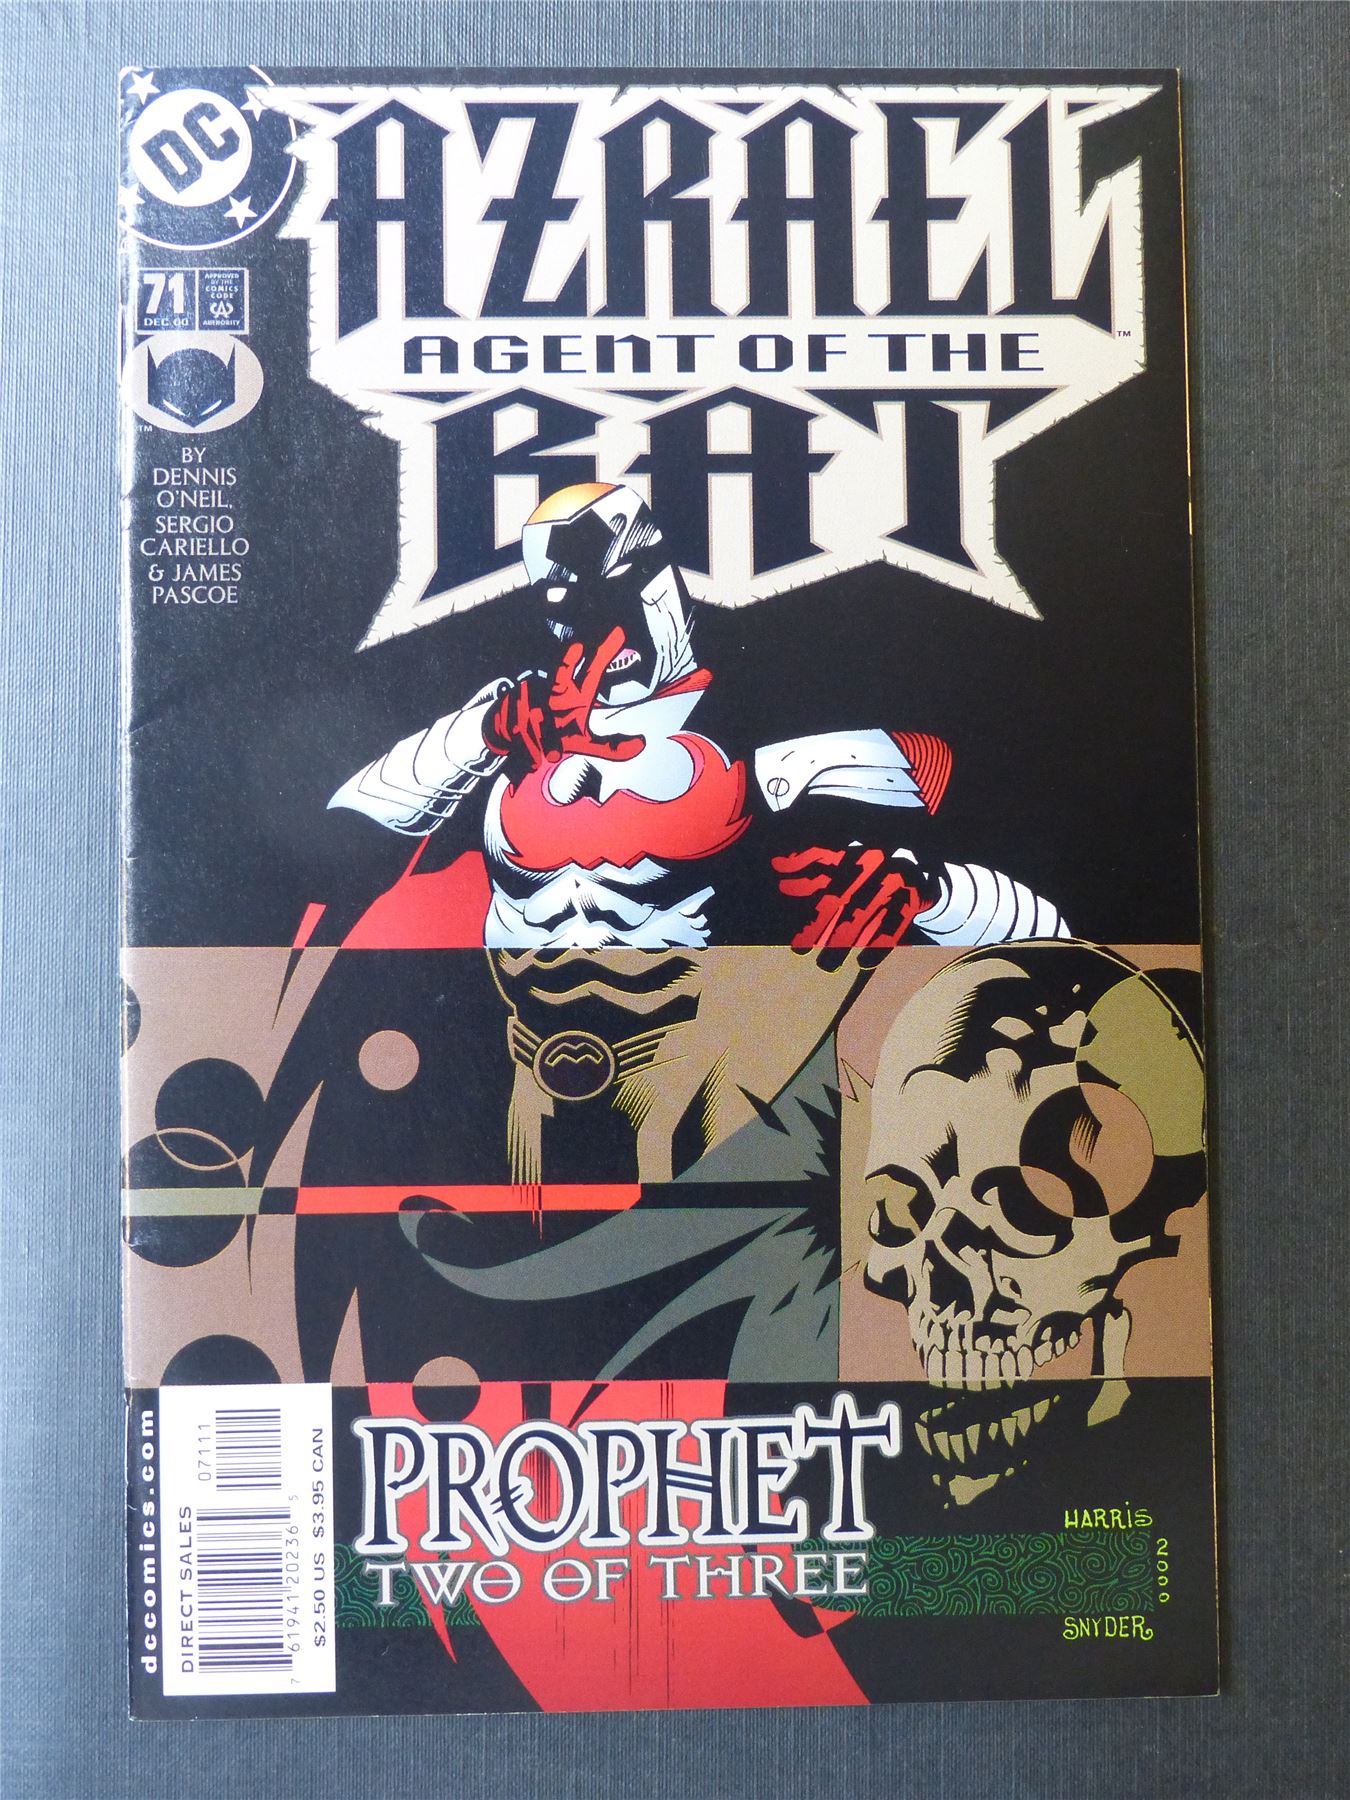 AZRAEL: Agent of the Bat #71 - DC Comics #1U1